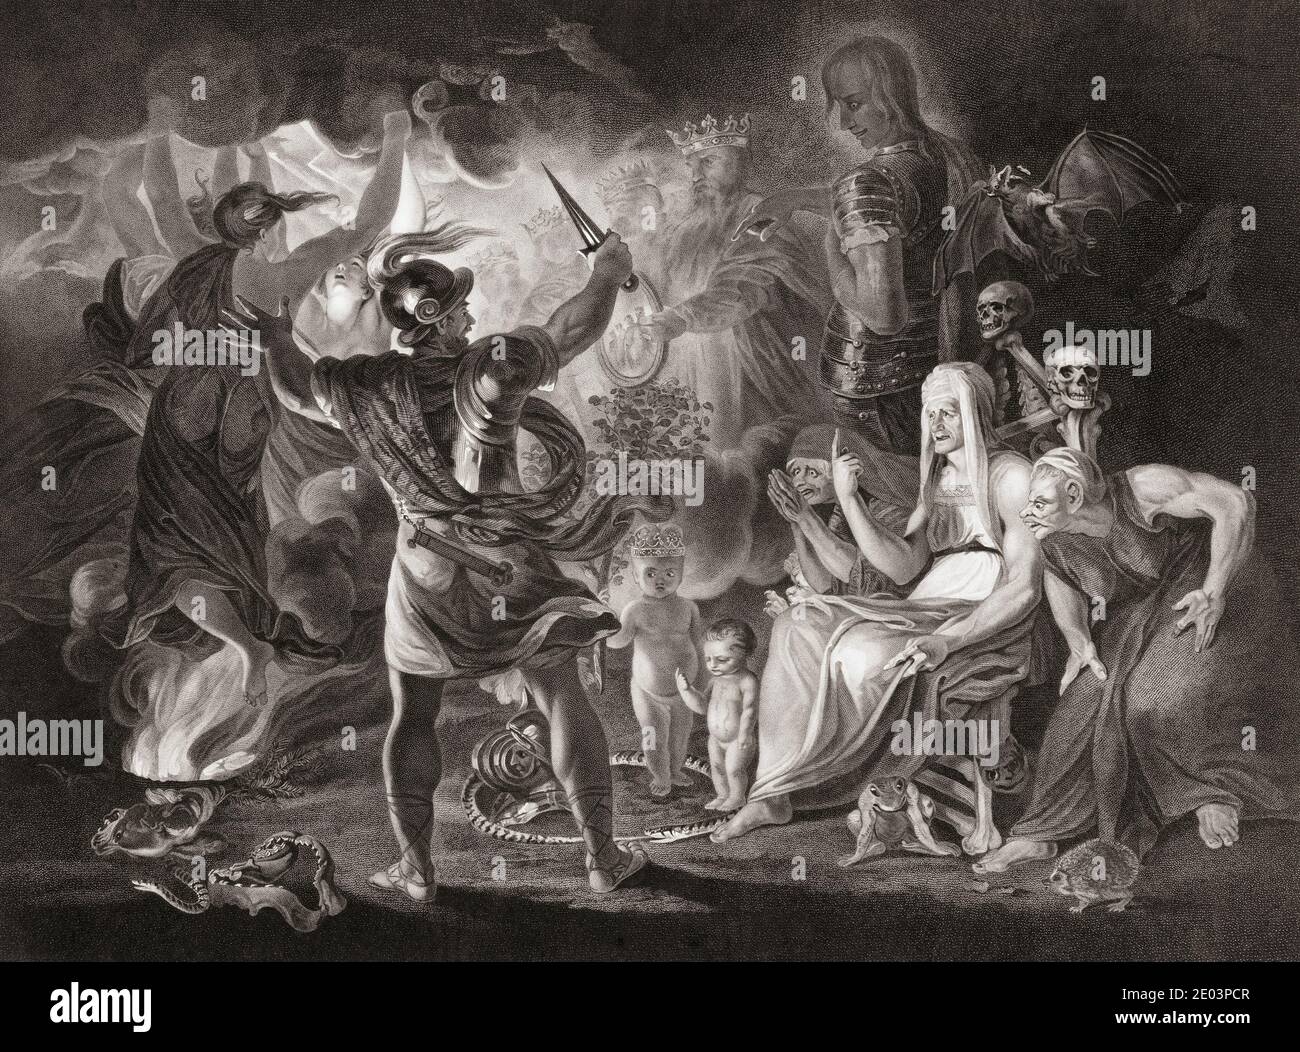 Illustrazione della commedia di William Shakespeare Macbeth, atto IV, scena I. da un'incisione del XVIII secolo di Robert Thew dopo un'opera di Sir Joshua Reynolds. Foto Stock